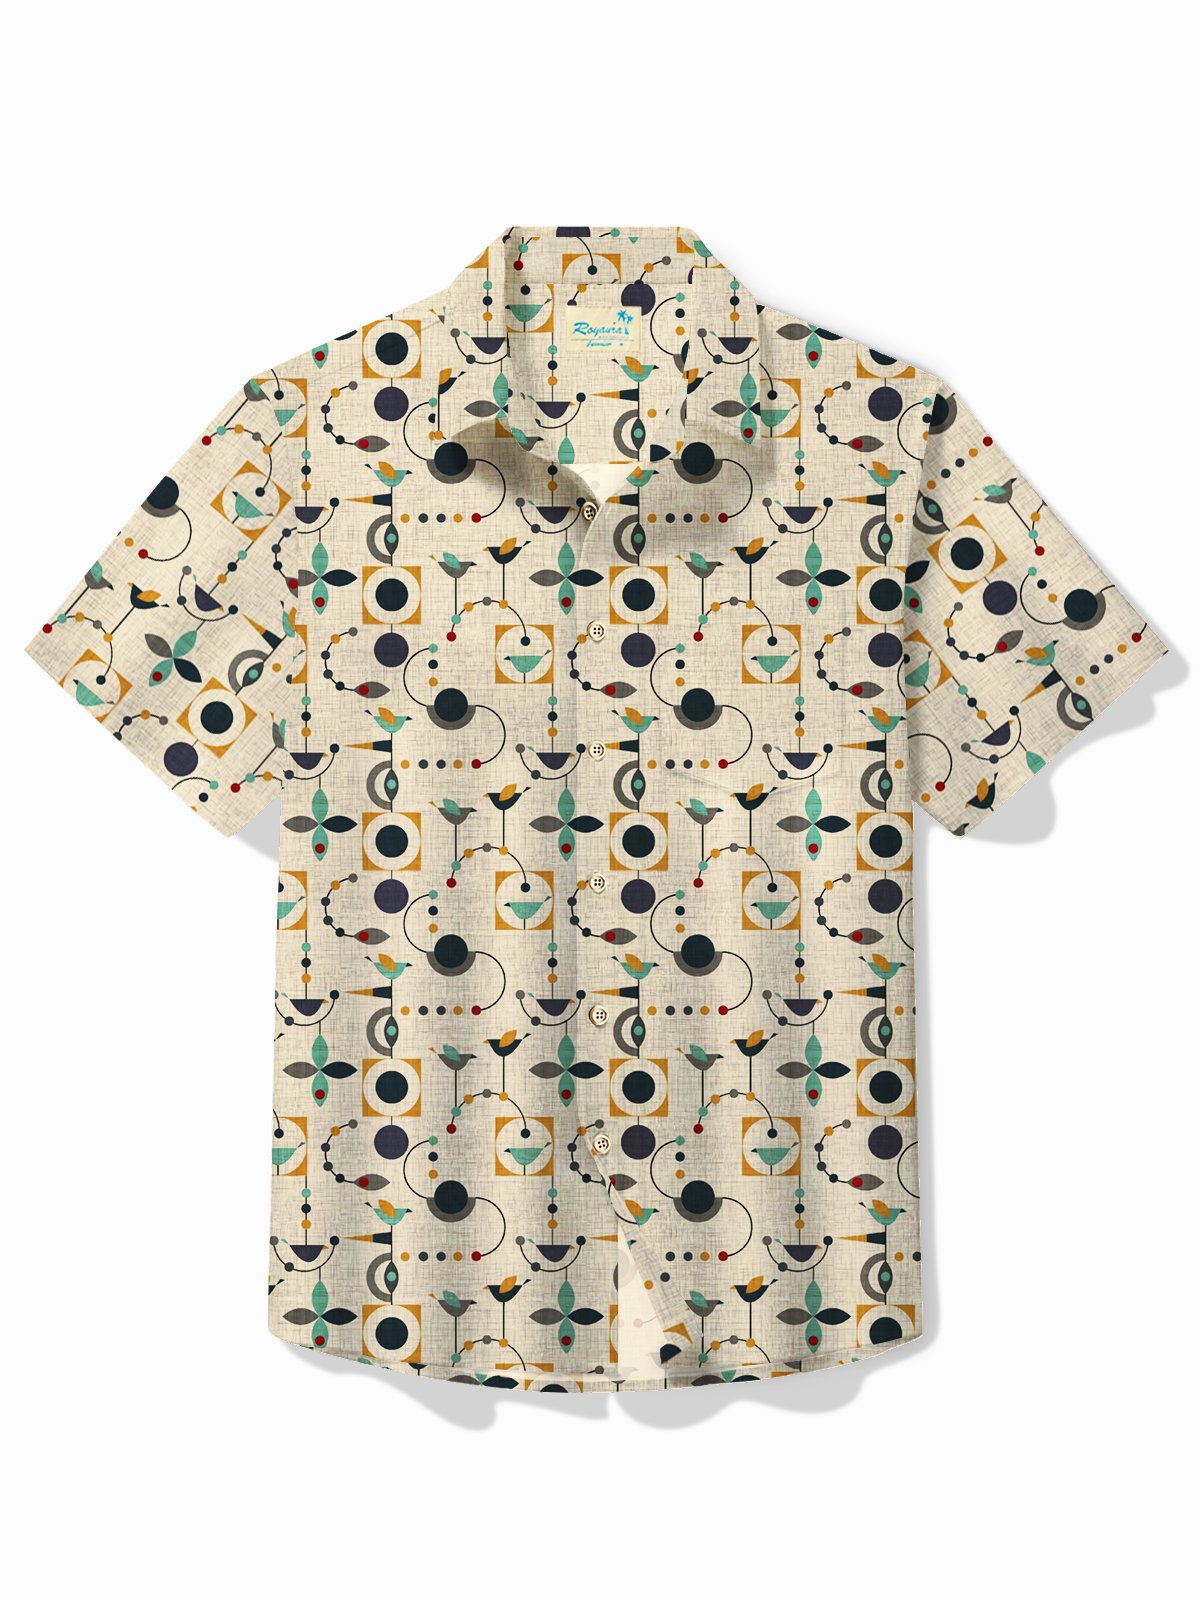 Royaura® Retro Mid Century Geometric Men's Hawaiian Shirt Oversized Stretch Aloha Shirt